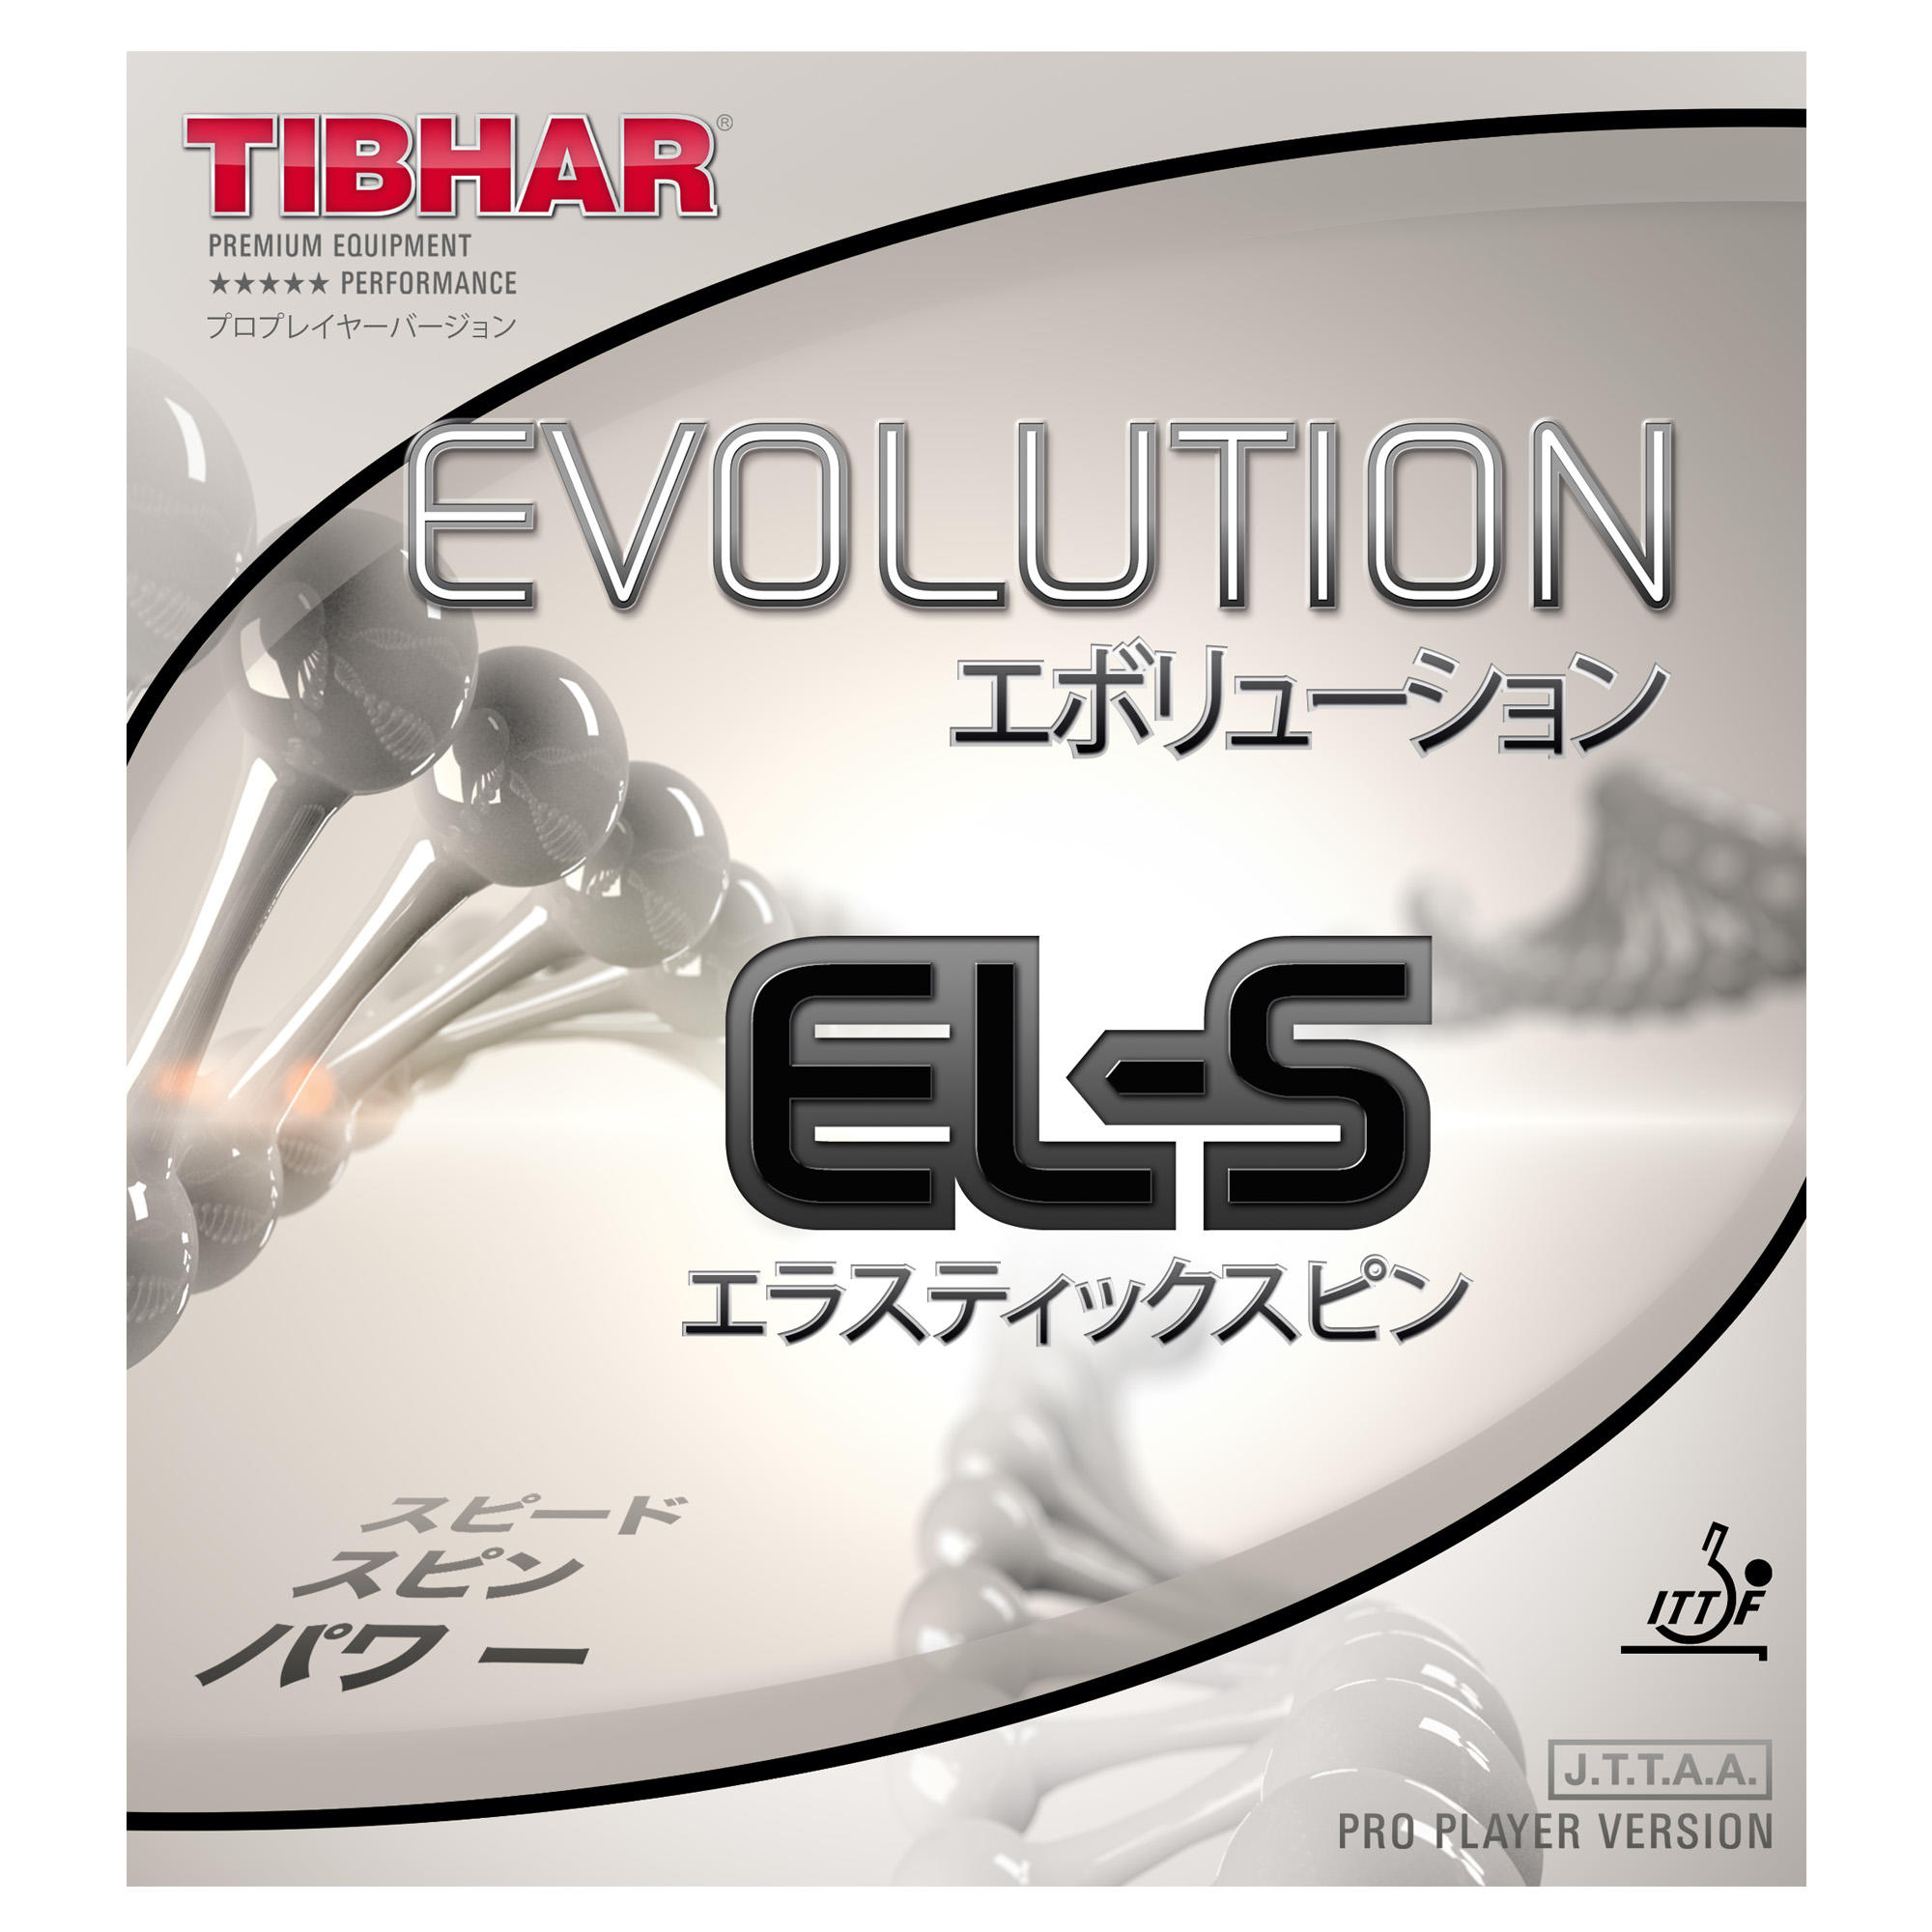 Față Paletă Tenis Evolution EL-S Accesorii imagine 2022